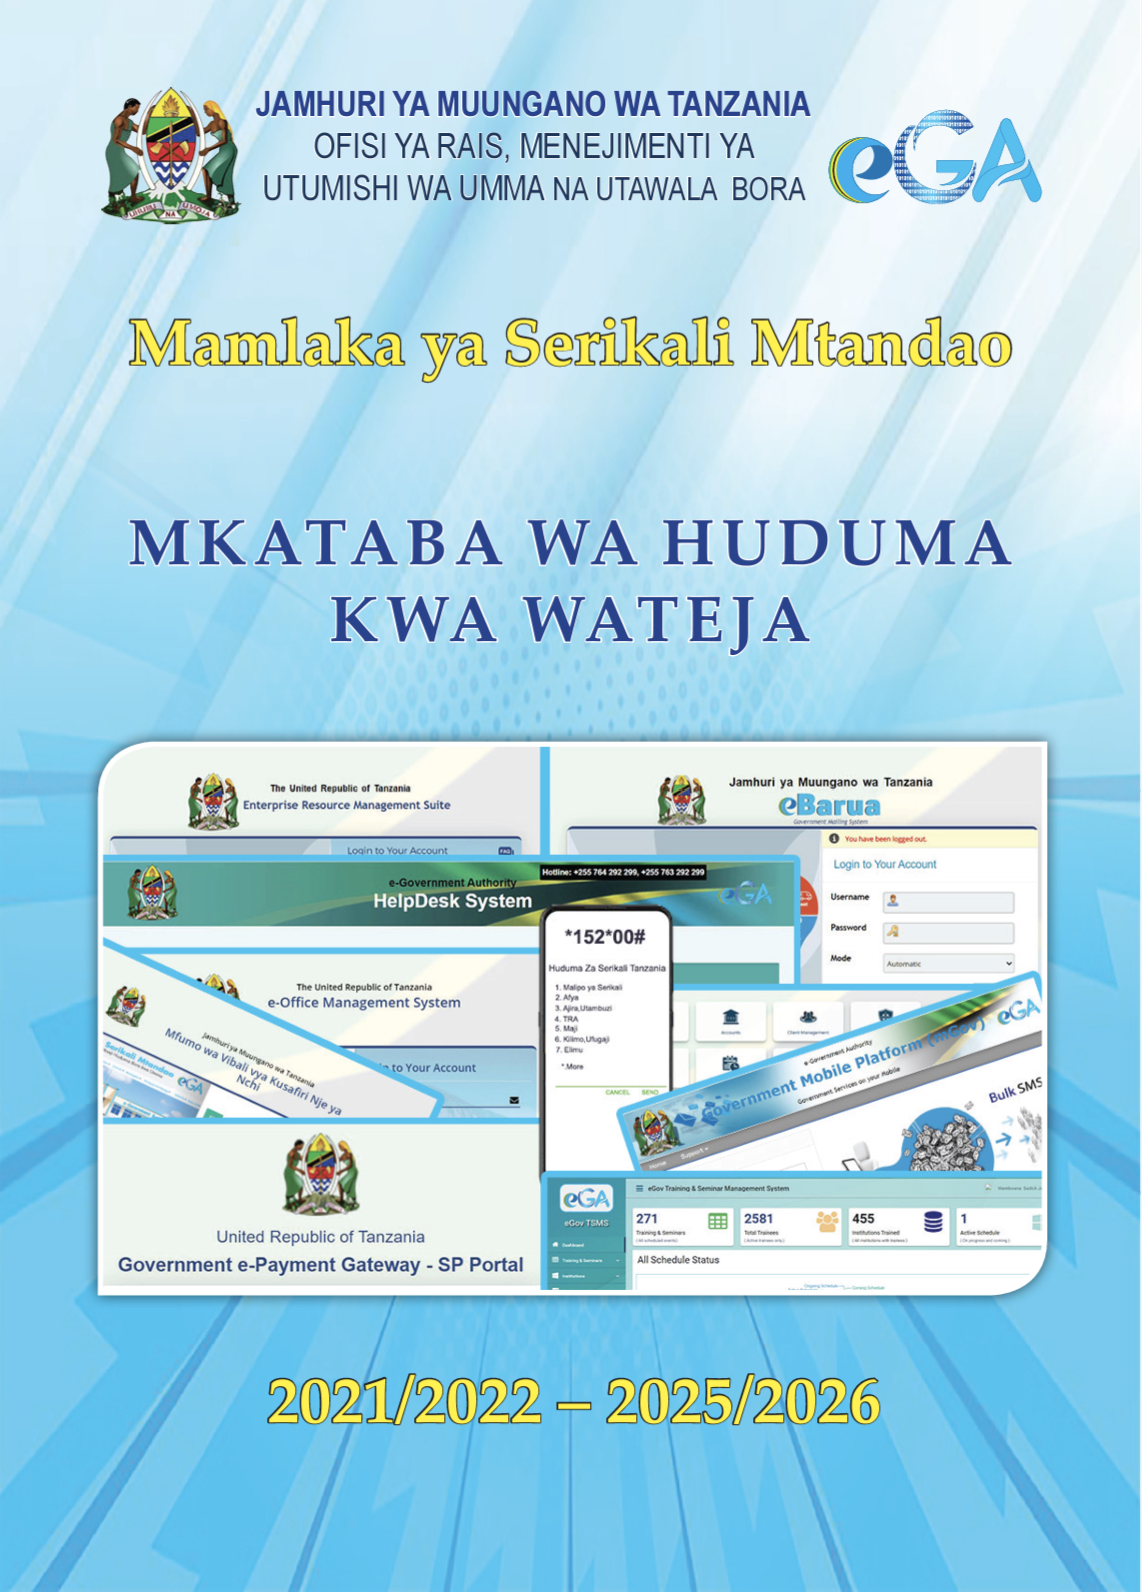 Mkataba wa Huduma kwa wateja 2021/2022 – 2025/2026